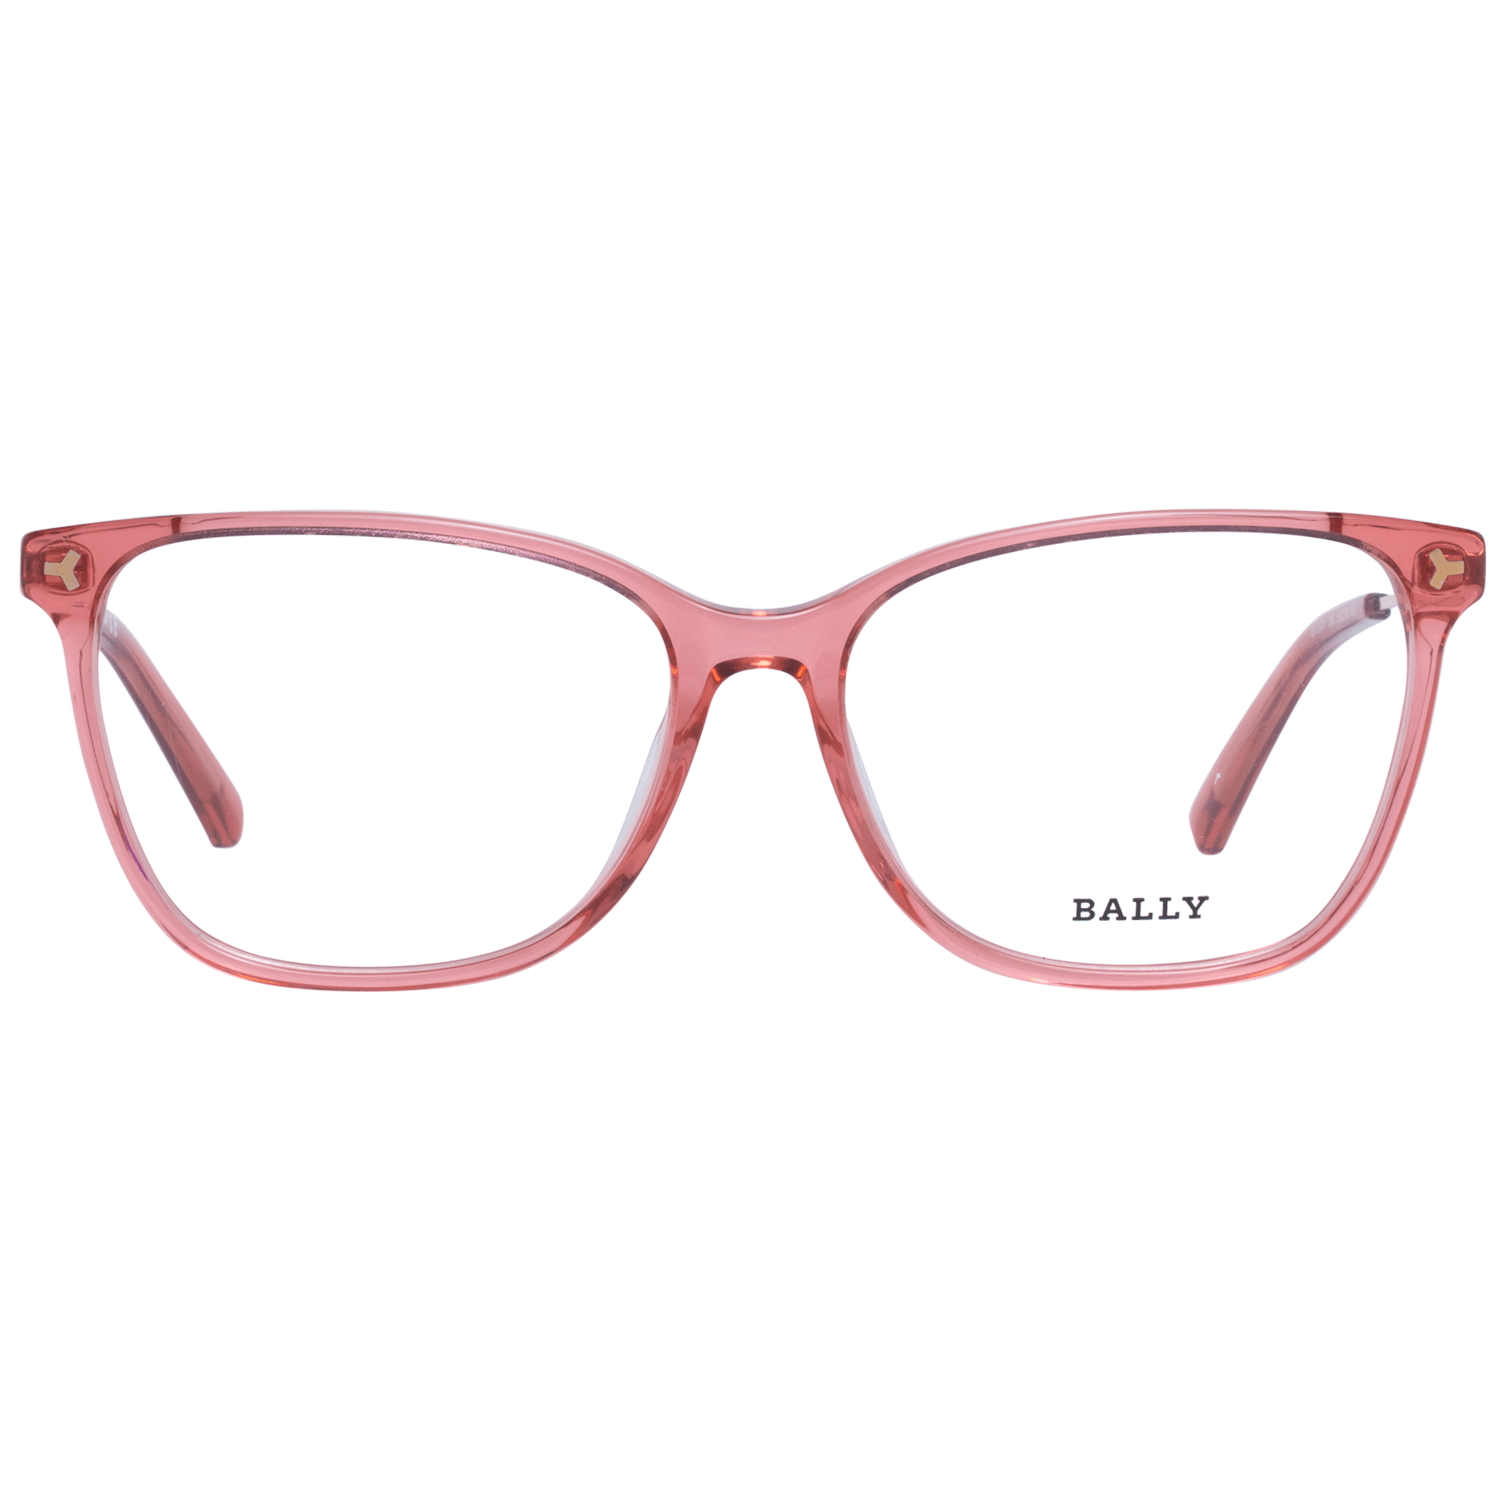 Bally Red Women Optical Frames - DEA STILOSA MILANO